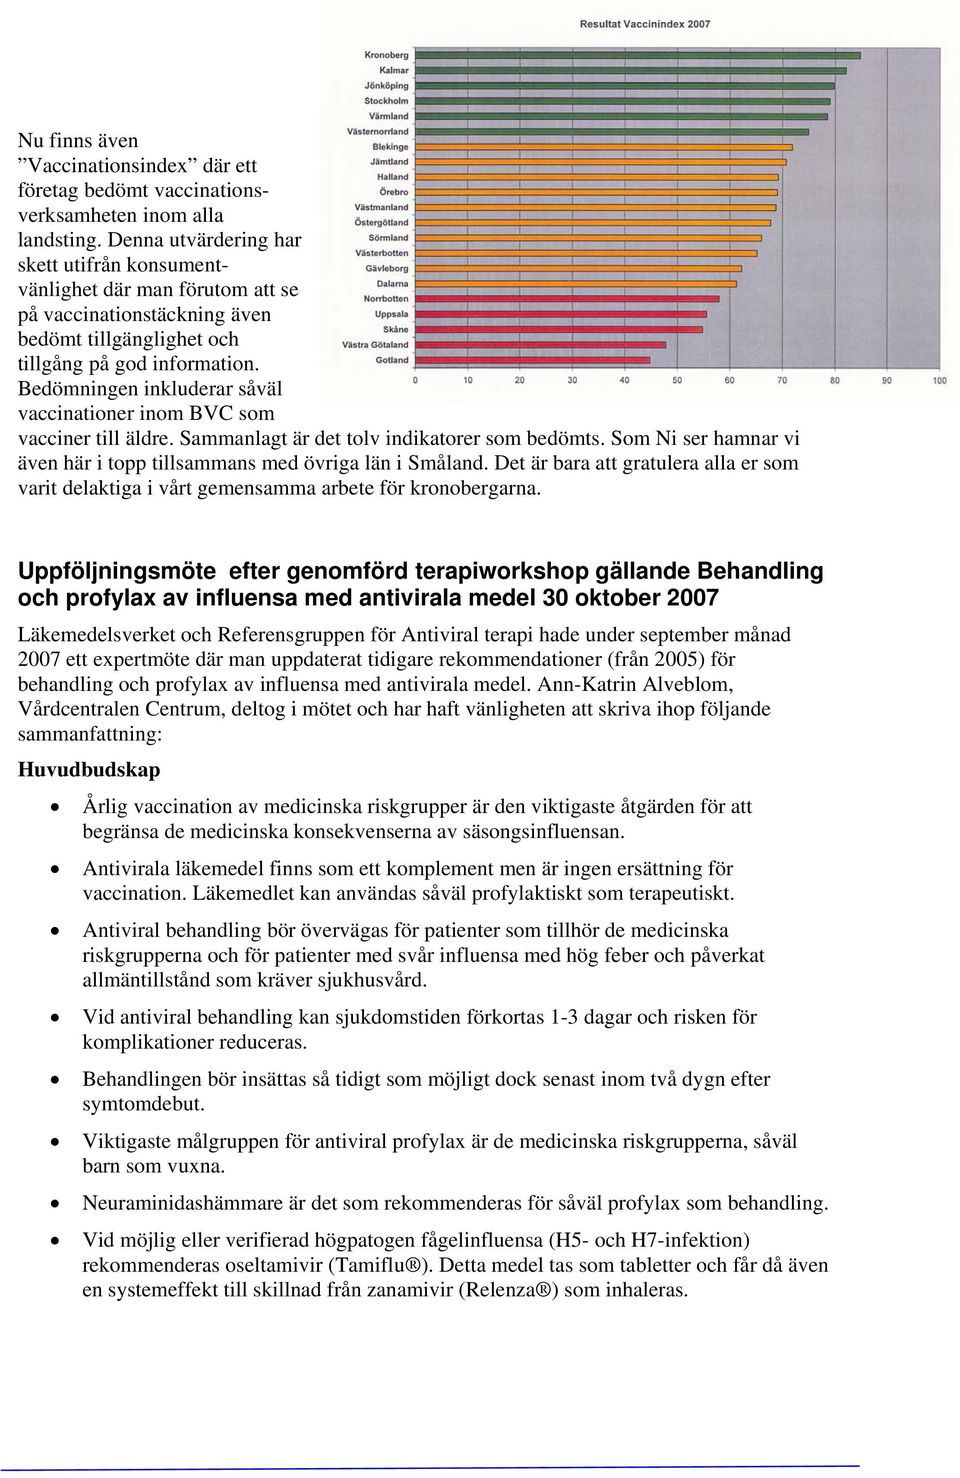 Bedömningen inkluderar såväl vaccinationer inom BVC som vacciner till äldre. Sammanlagt är det tolv indikatorer som bedömts. Som Ni ser hamnar vi även här i topp tillsammans med övriga län i Småland.